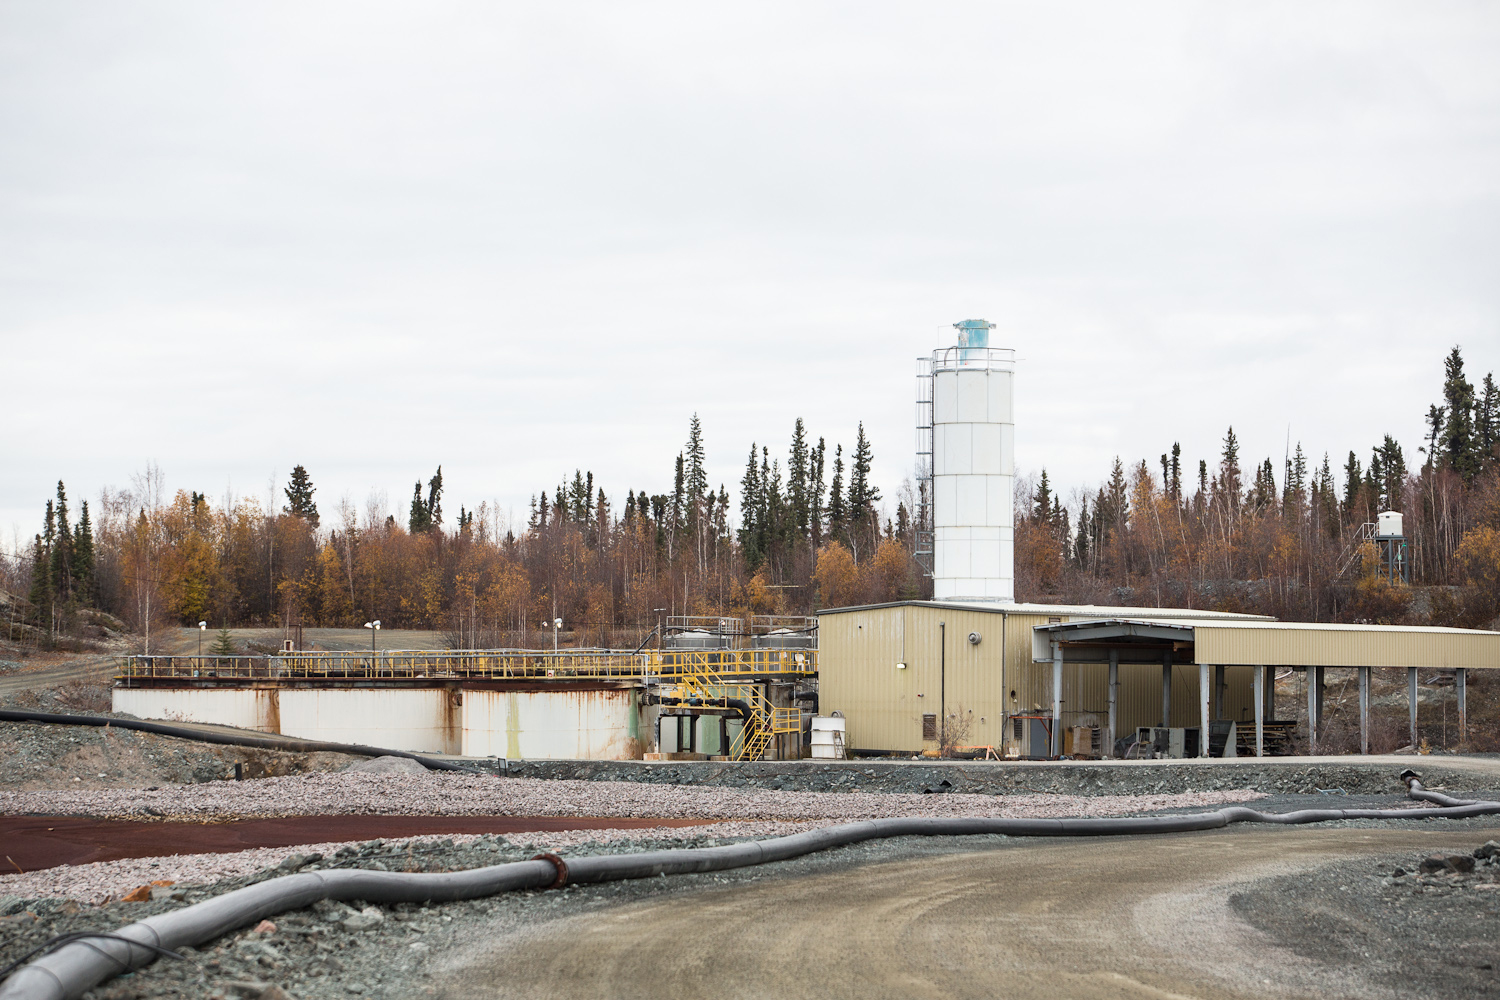 La photo montre un tuyau menant à une usine de traitement des effluents. Trois grands réservoirs sont visibles à côté d'un bâtiment, avec des arbres en arrière-plan.